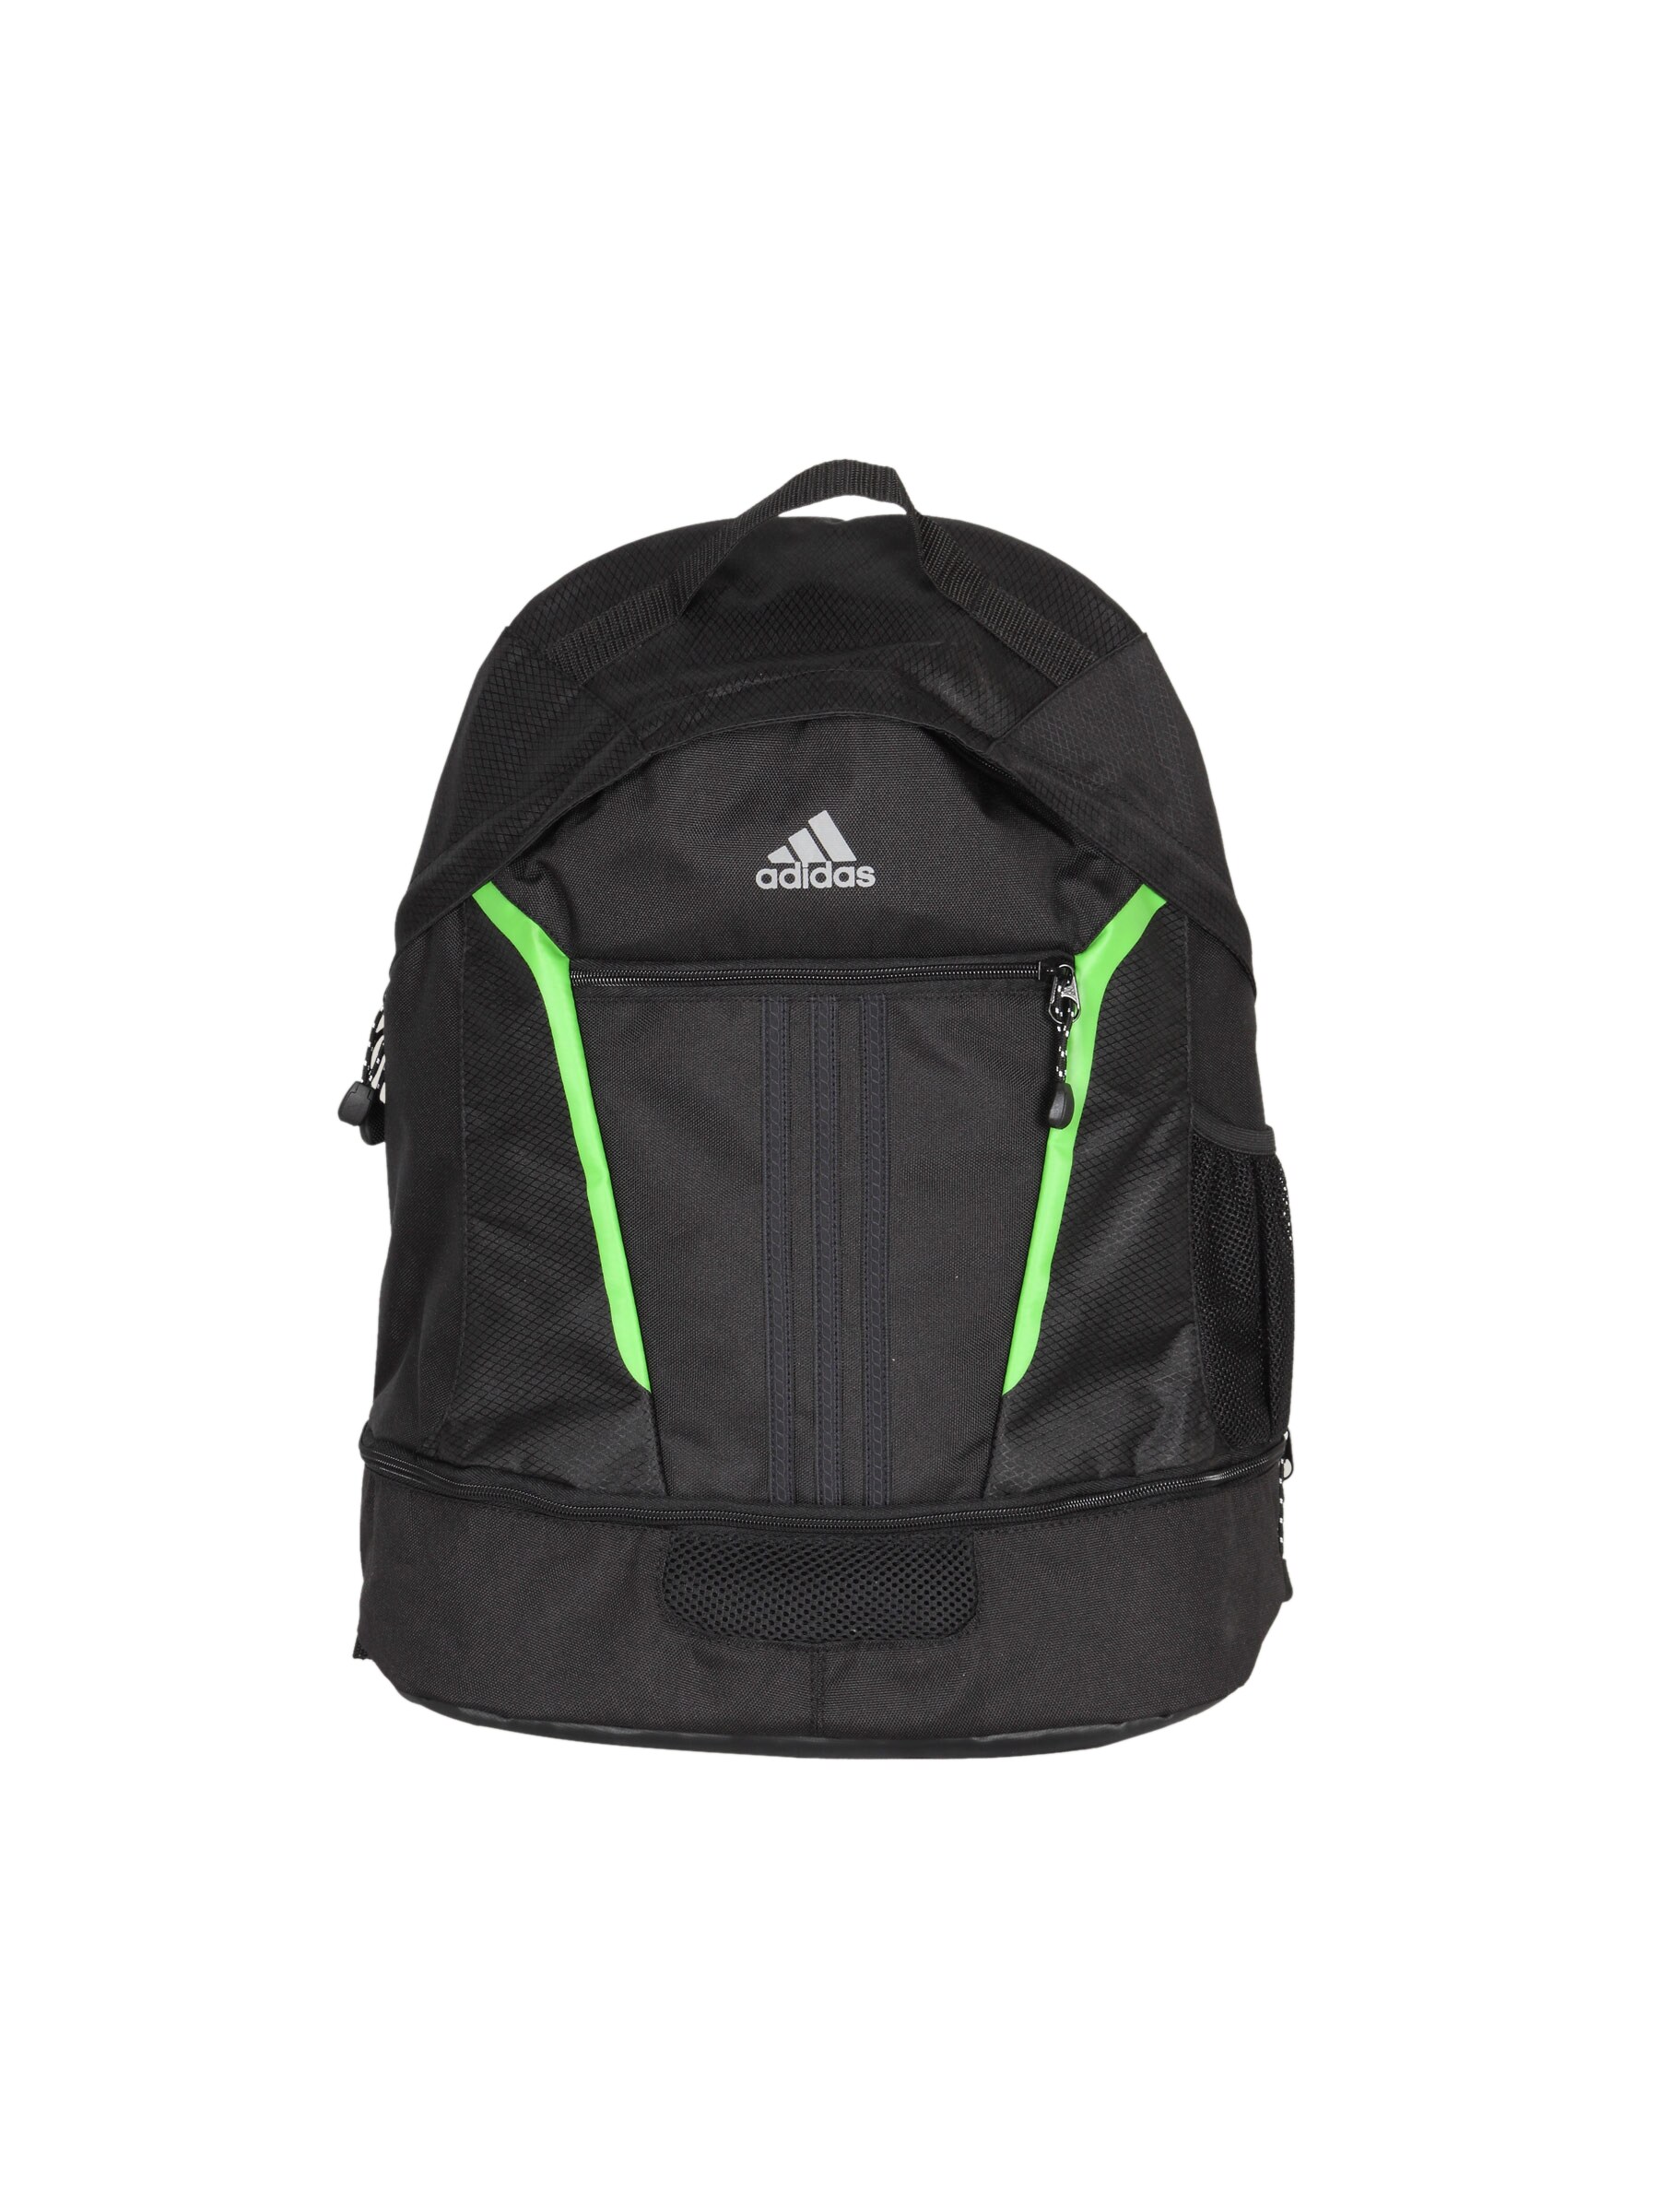 ADIDAS Unisex C365 Black Backpack